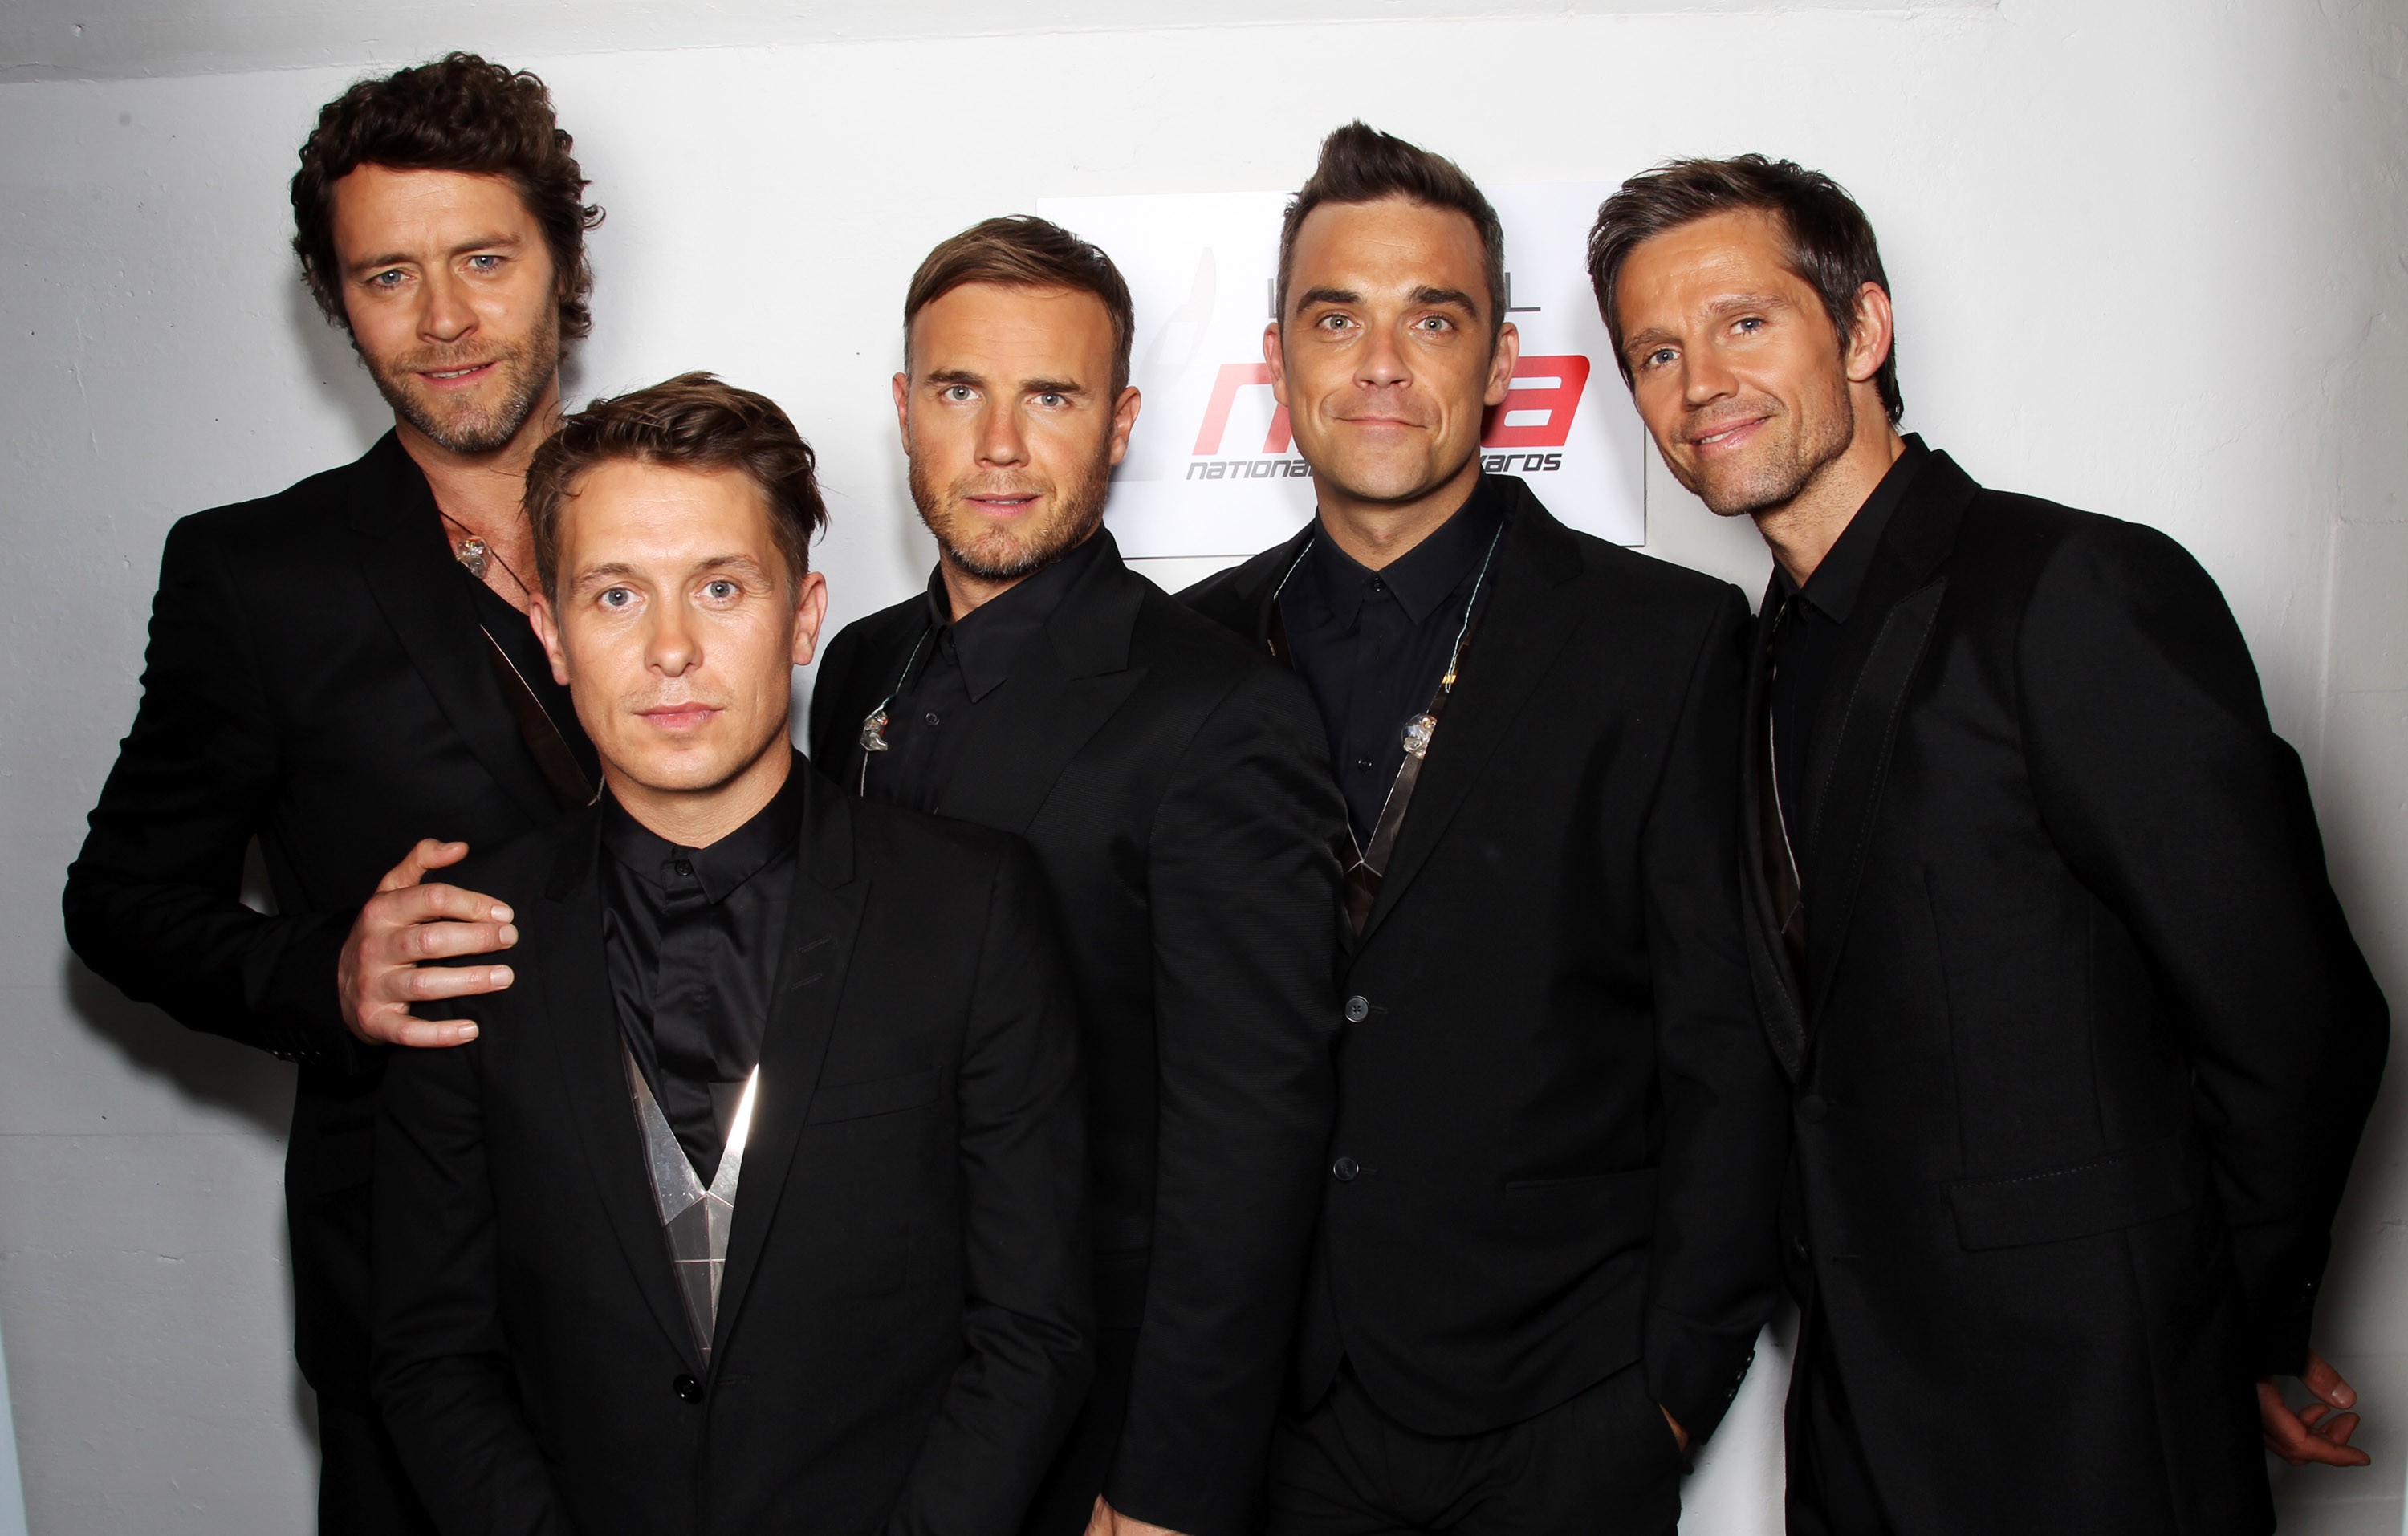  Da esquerda para a direita: Howard Donald, Mark Owen, Gary Barlow, Robbie Williams e Jason Orange, do grupo Take That, em 2011 (Foto: Getty Images)